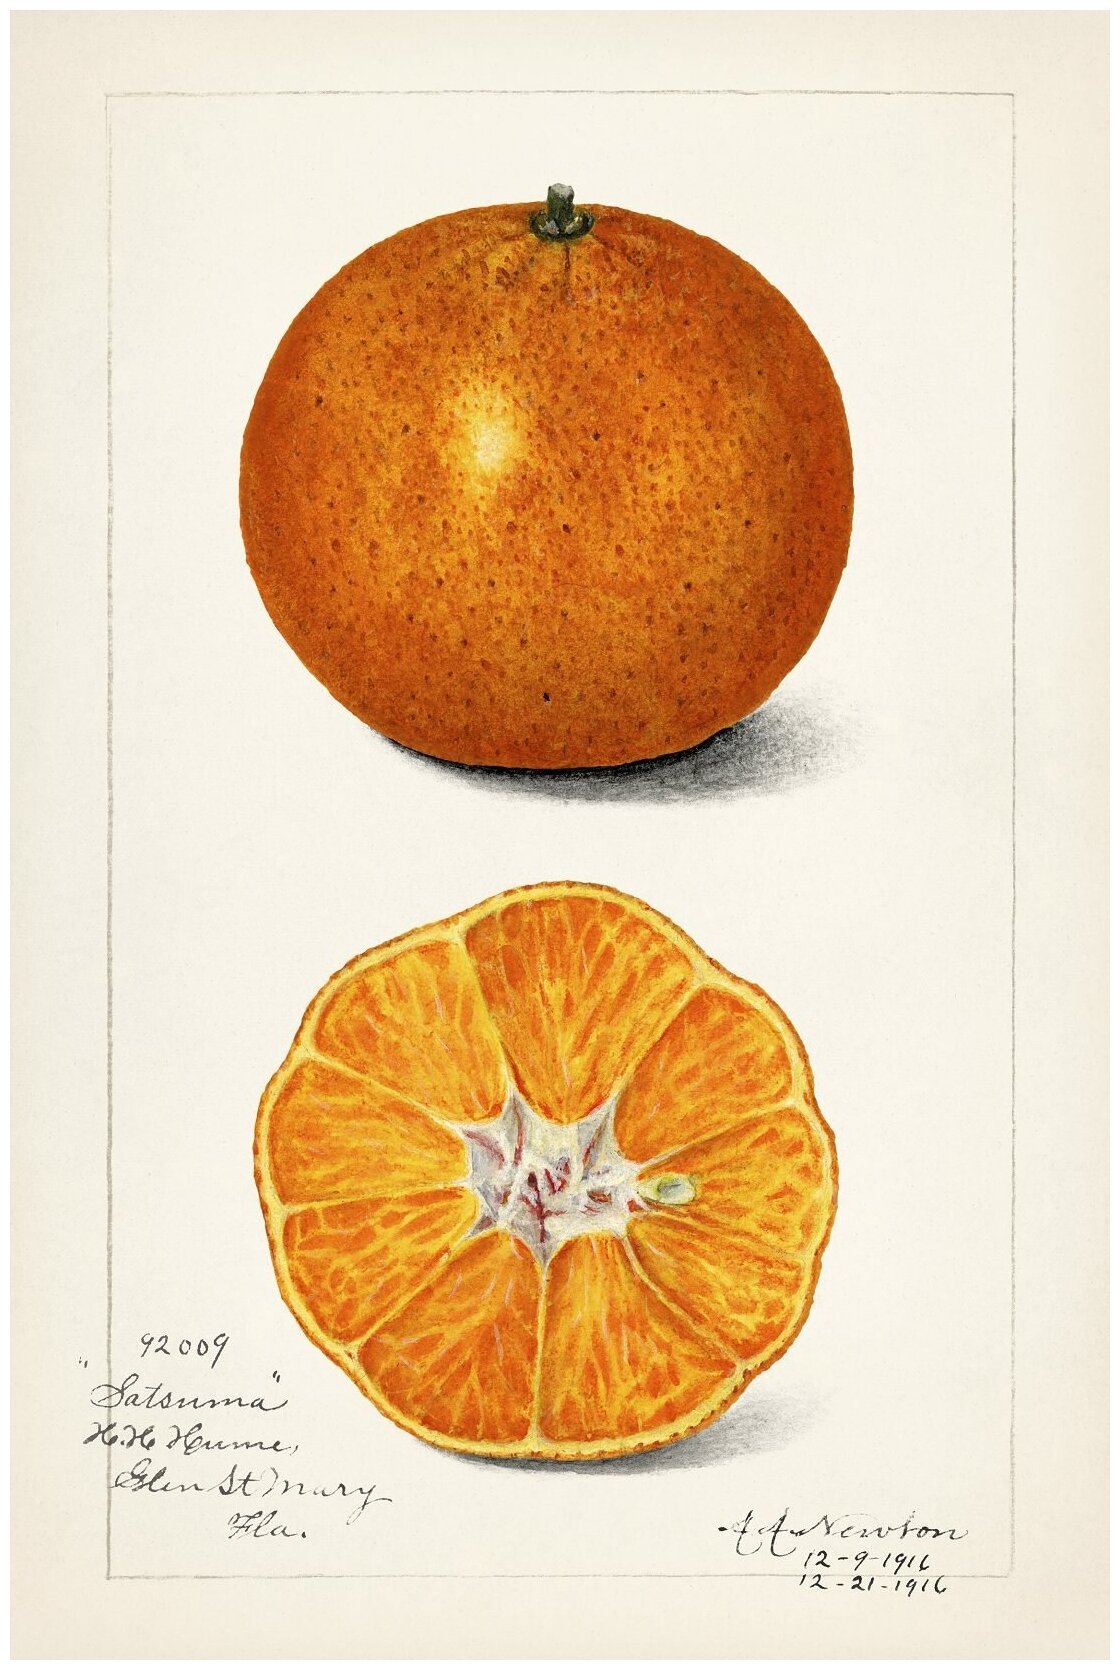 Постер / Плакат / Картина Апельсин в разрезе - старинная иллюстрация